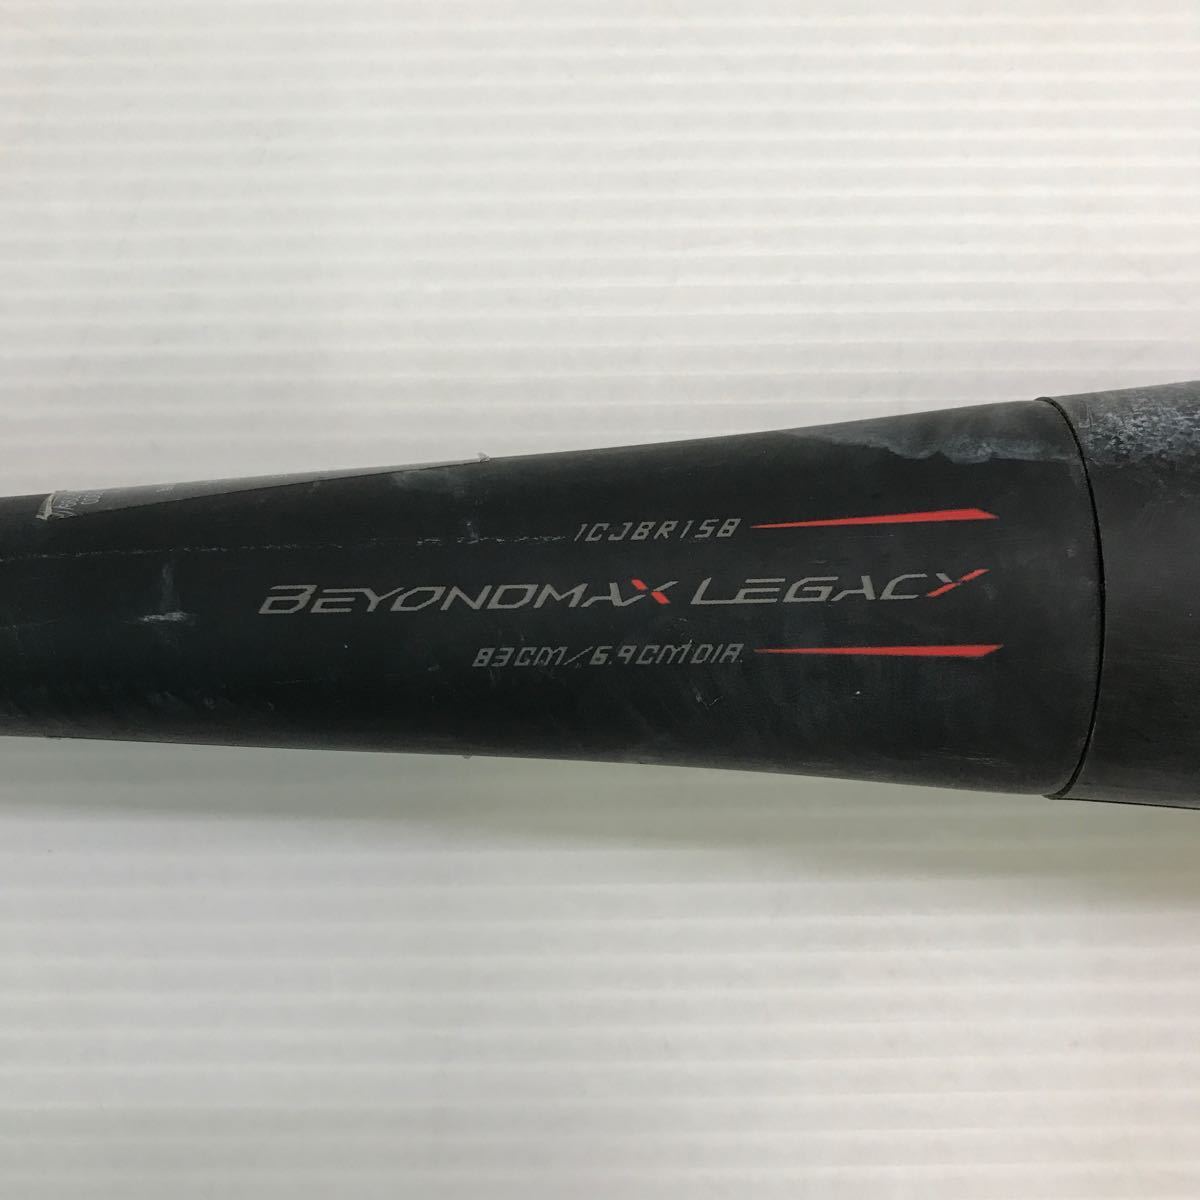 B-4999 ミズノ mizuno ビヨンドマックス レガシー BEYONDMAX LEGACY 軟式 83cm 複合 バット 1CJBR158 野球 中古_画像4